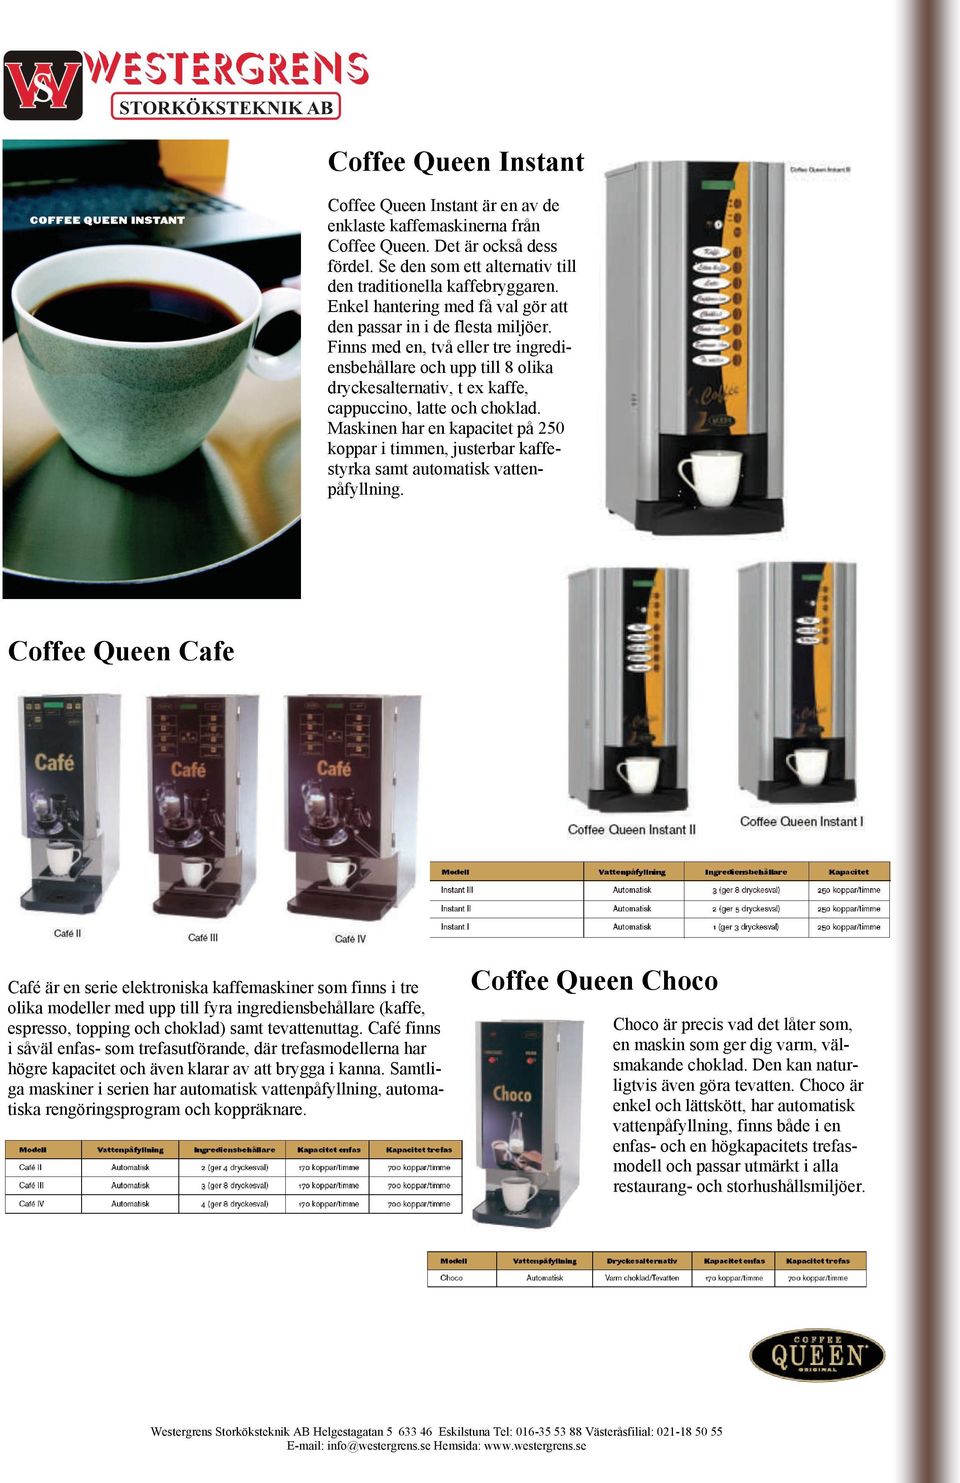 Maskinen har en kapacitet på 250 koppar i timmen, justerbar kaffestyrka samt automatisk vattenpåfyllning.